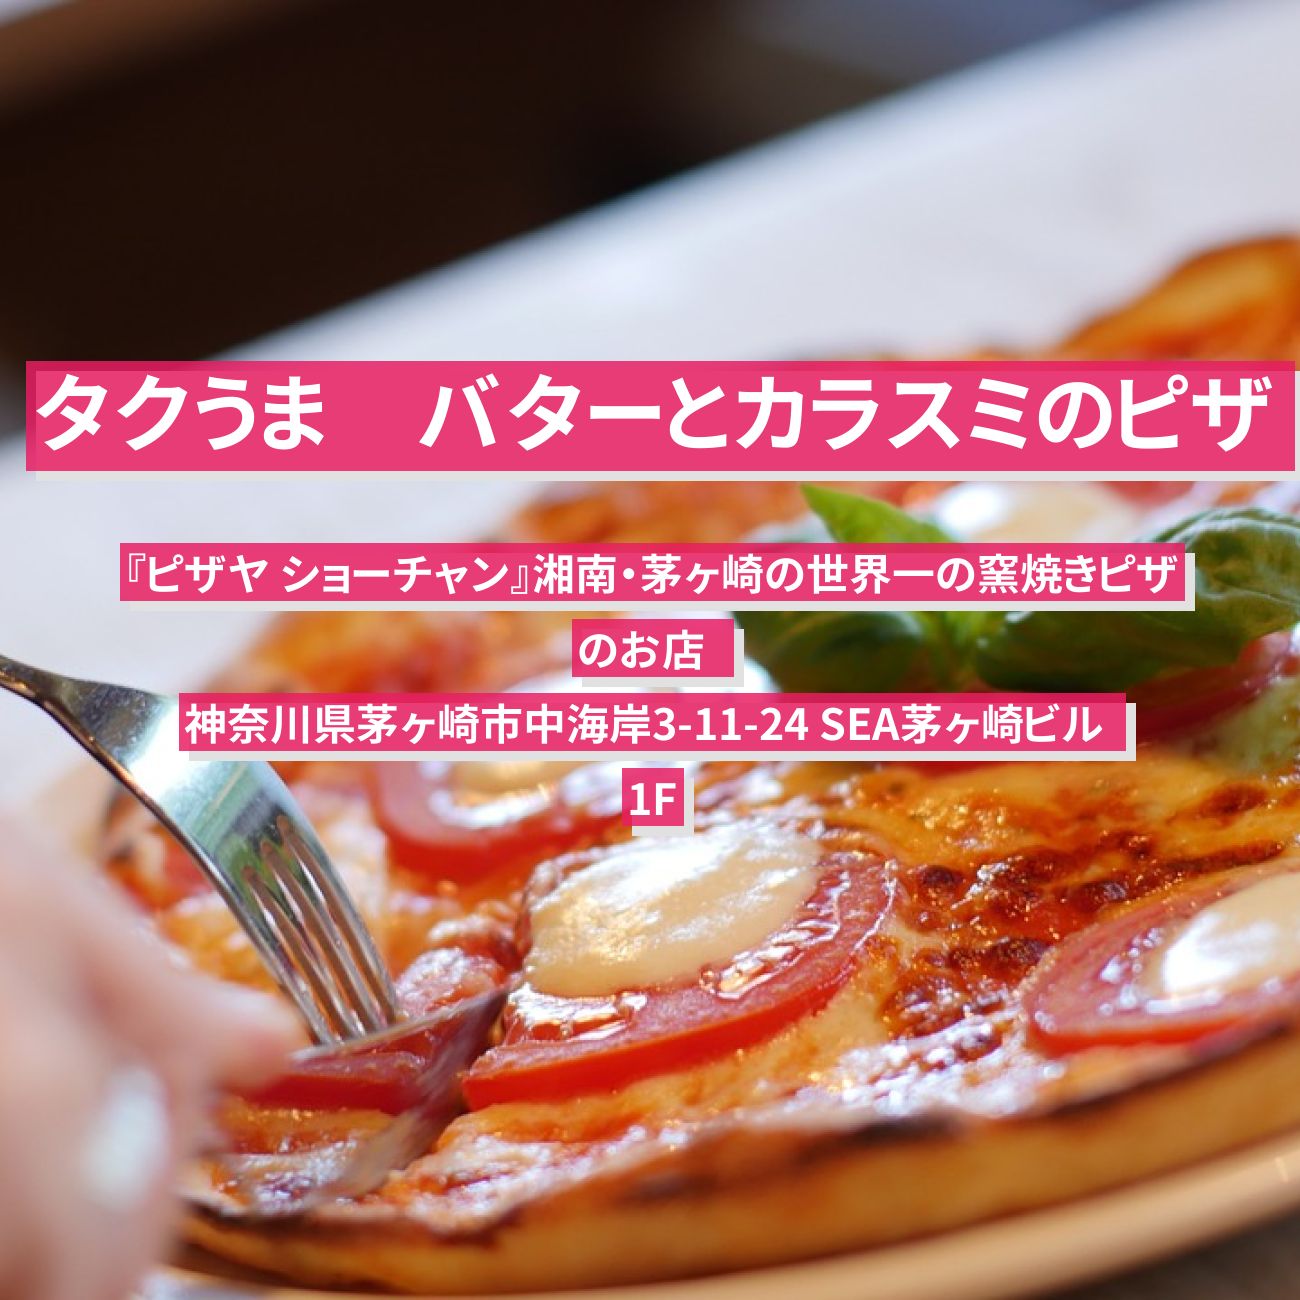 【タクうま】カラスミのピザ『ピザヤ ショーチャン』湘南・茅ヶ崎の世界一の窯焼きピザのお店  〔タクシー運転手さん一番うまい店に連れてって〕